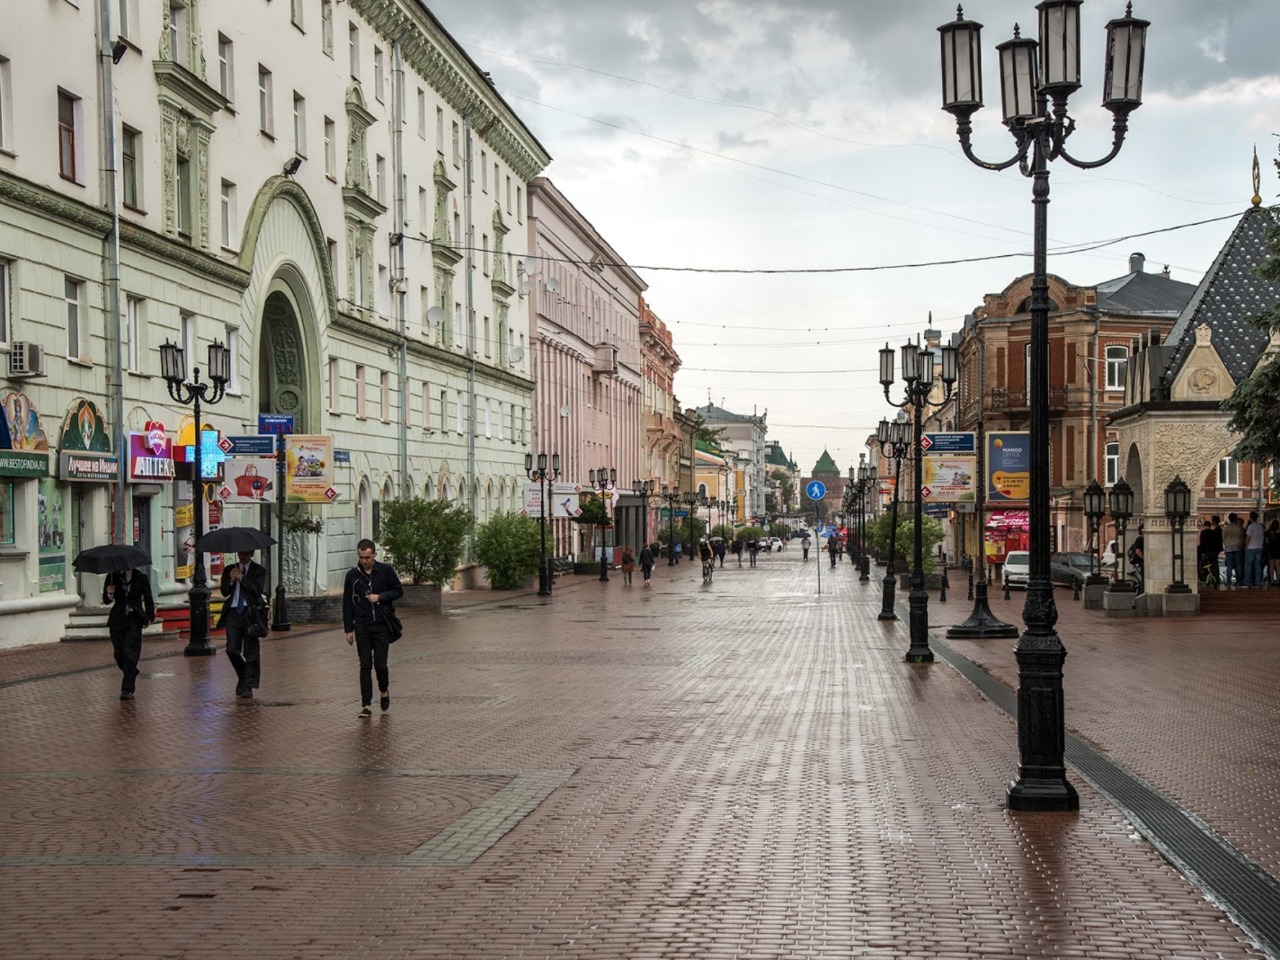 Галопом по Нижнему Новгороду | Цена 6500₽, отзывы, описание экскурсии